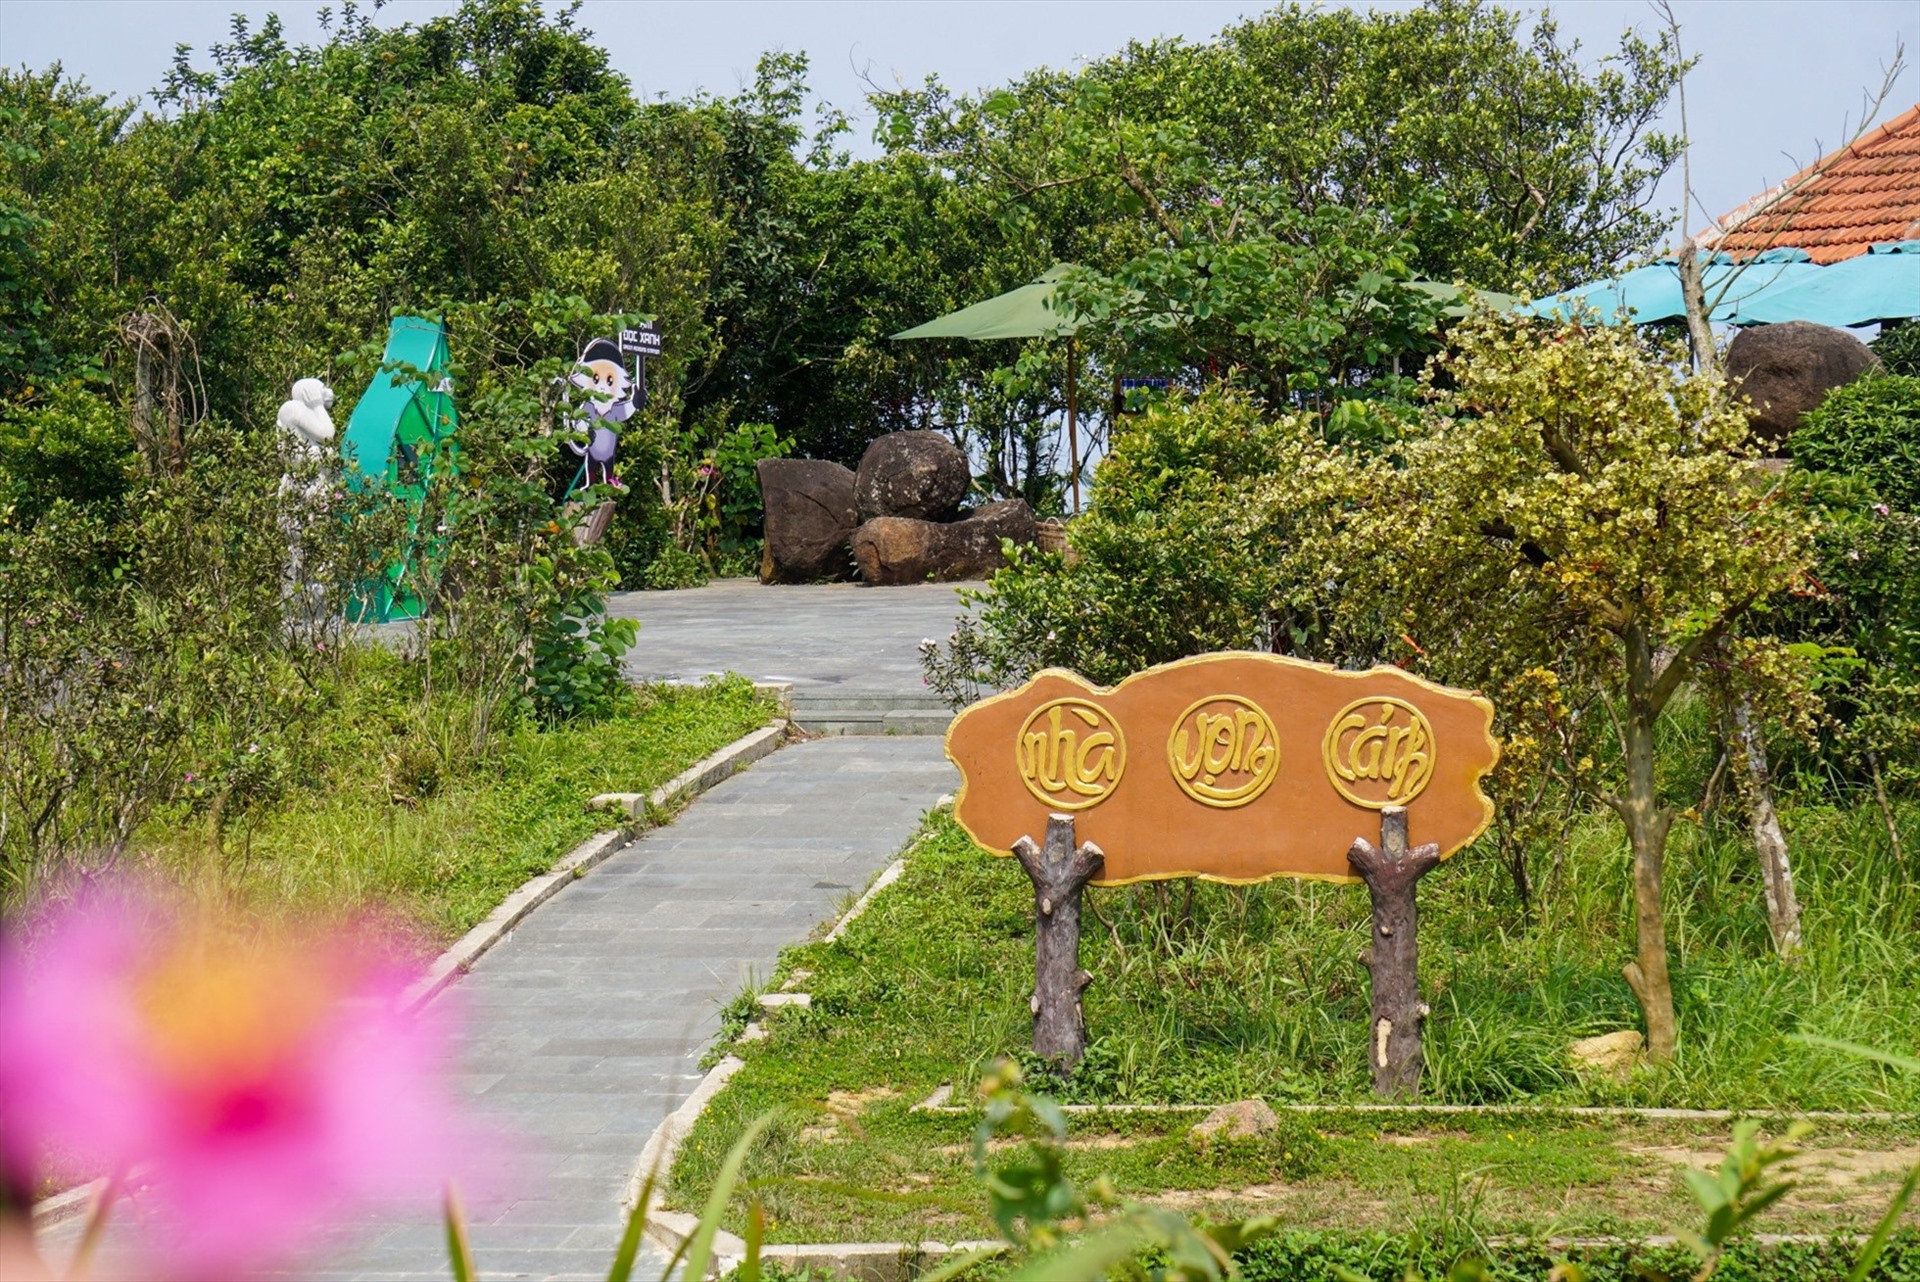 Dự án “Trạm đọc xanh – Green reading station” được Ban Quản lý bán đảo Sơn Trà và các bãi biển du lịch Đà Nẵng triển khai trên bán đảo Sơn Trà. Ảnh: Văn Trực